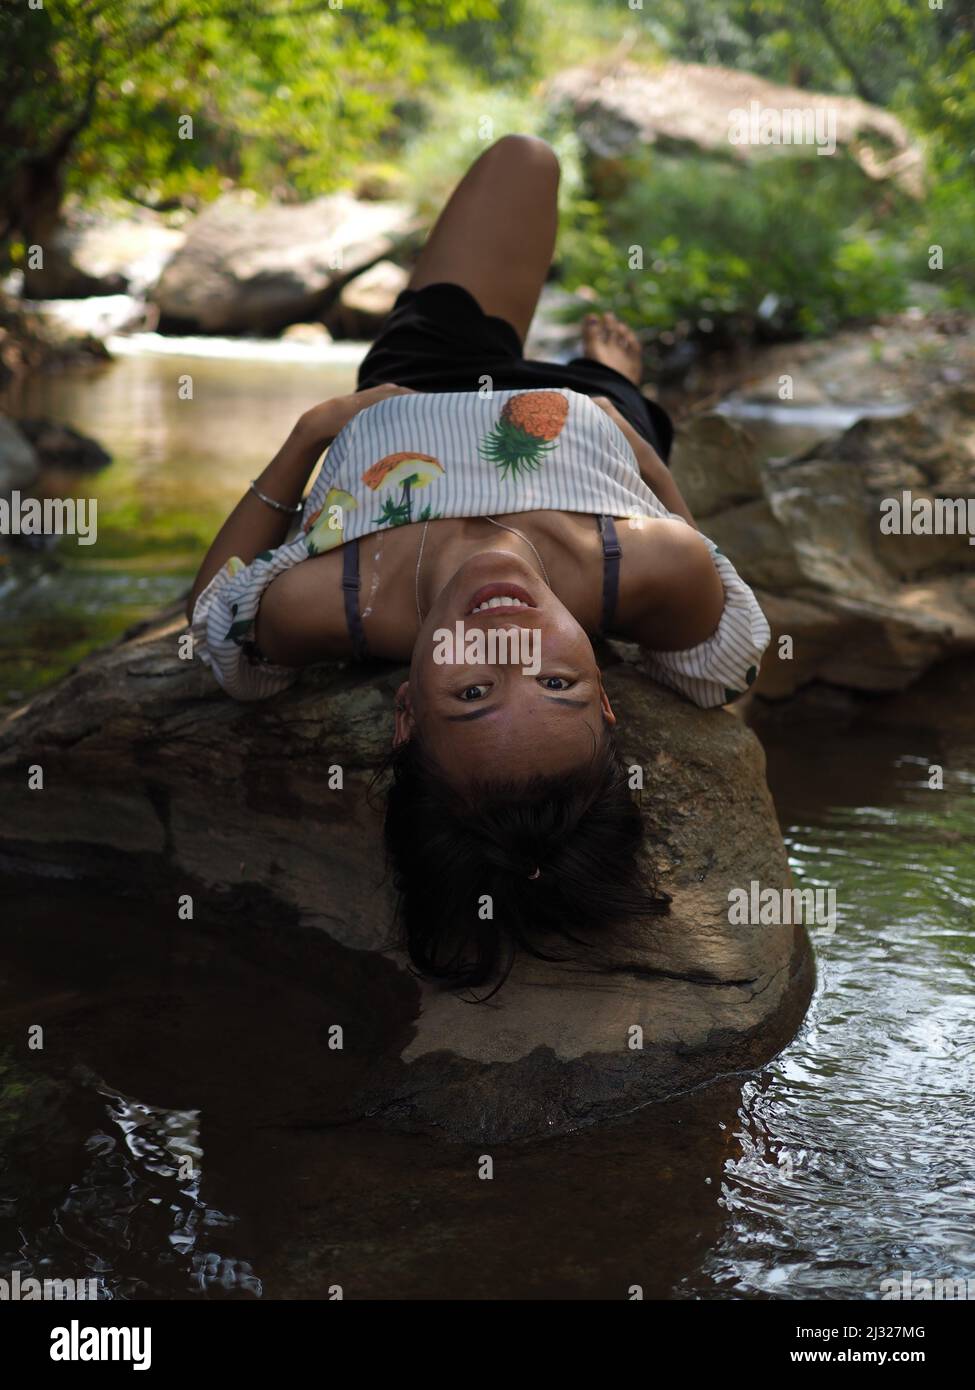 Junge asiatische Frau in einem Dschungelfluss in moderner Kleidung Stockfoto